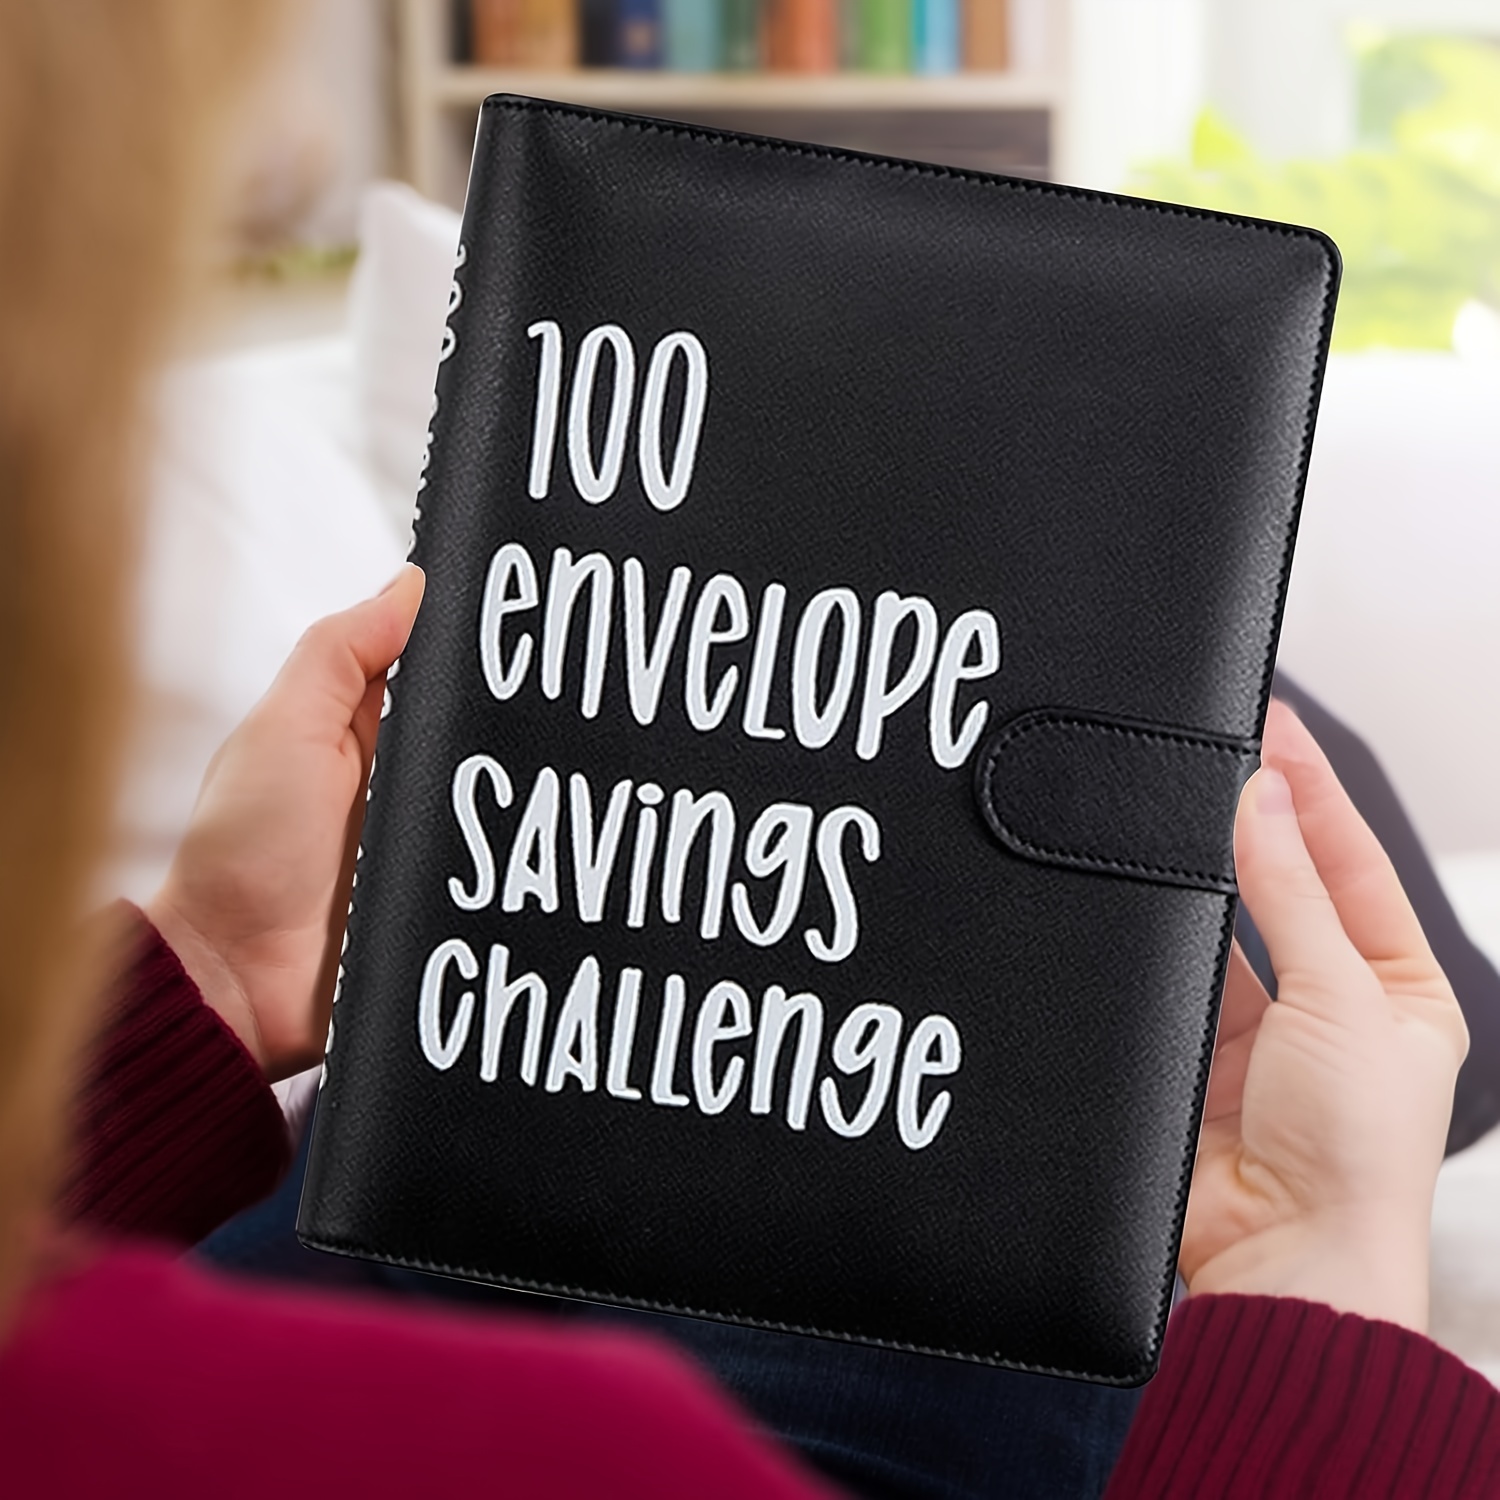 Carpeta de desafíos de ahorro de dinero de 100 sobres, carpeta de ahorro de  dinero para ahorrar $5,050, kit de libro de desafíos de ahorro con sobres